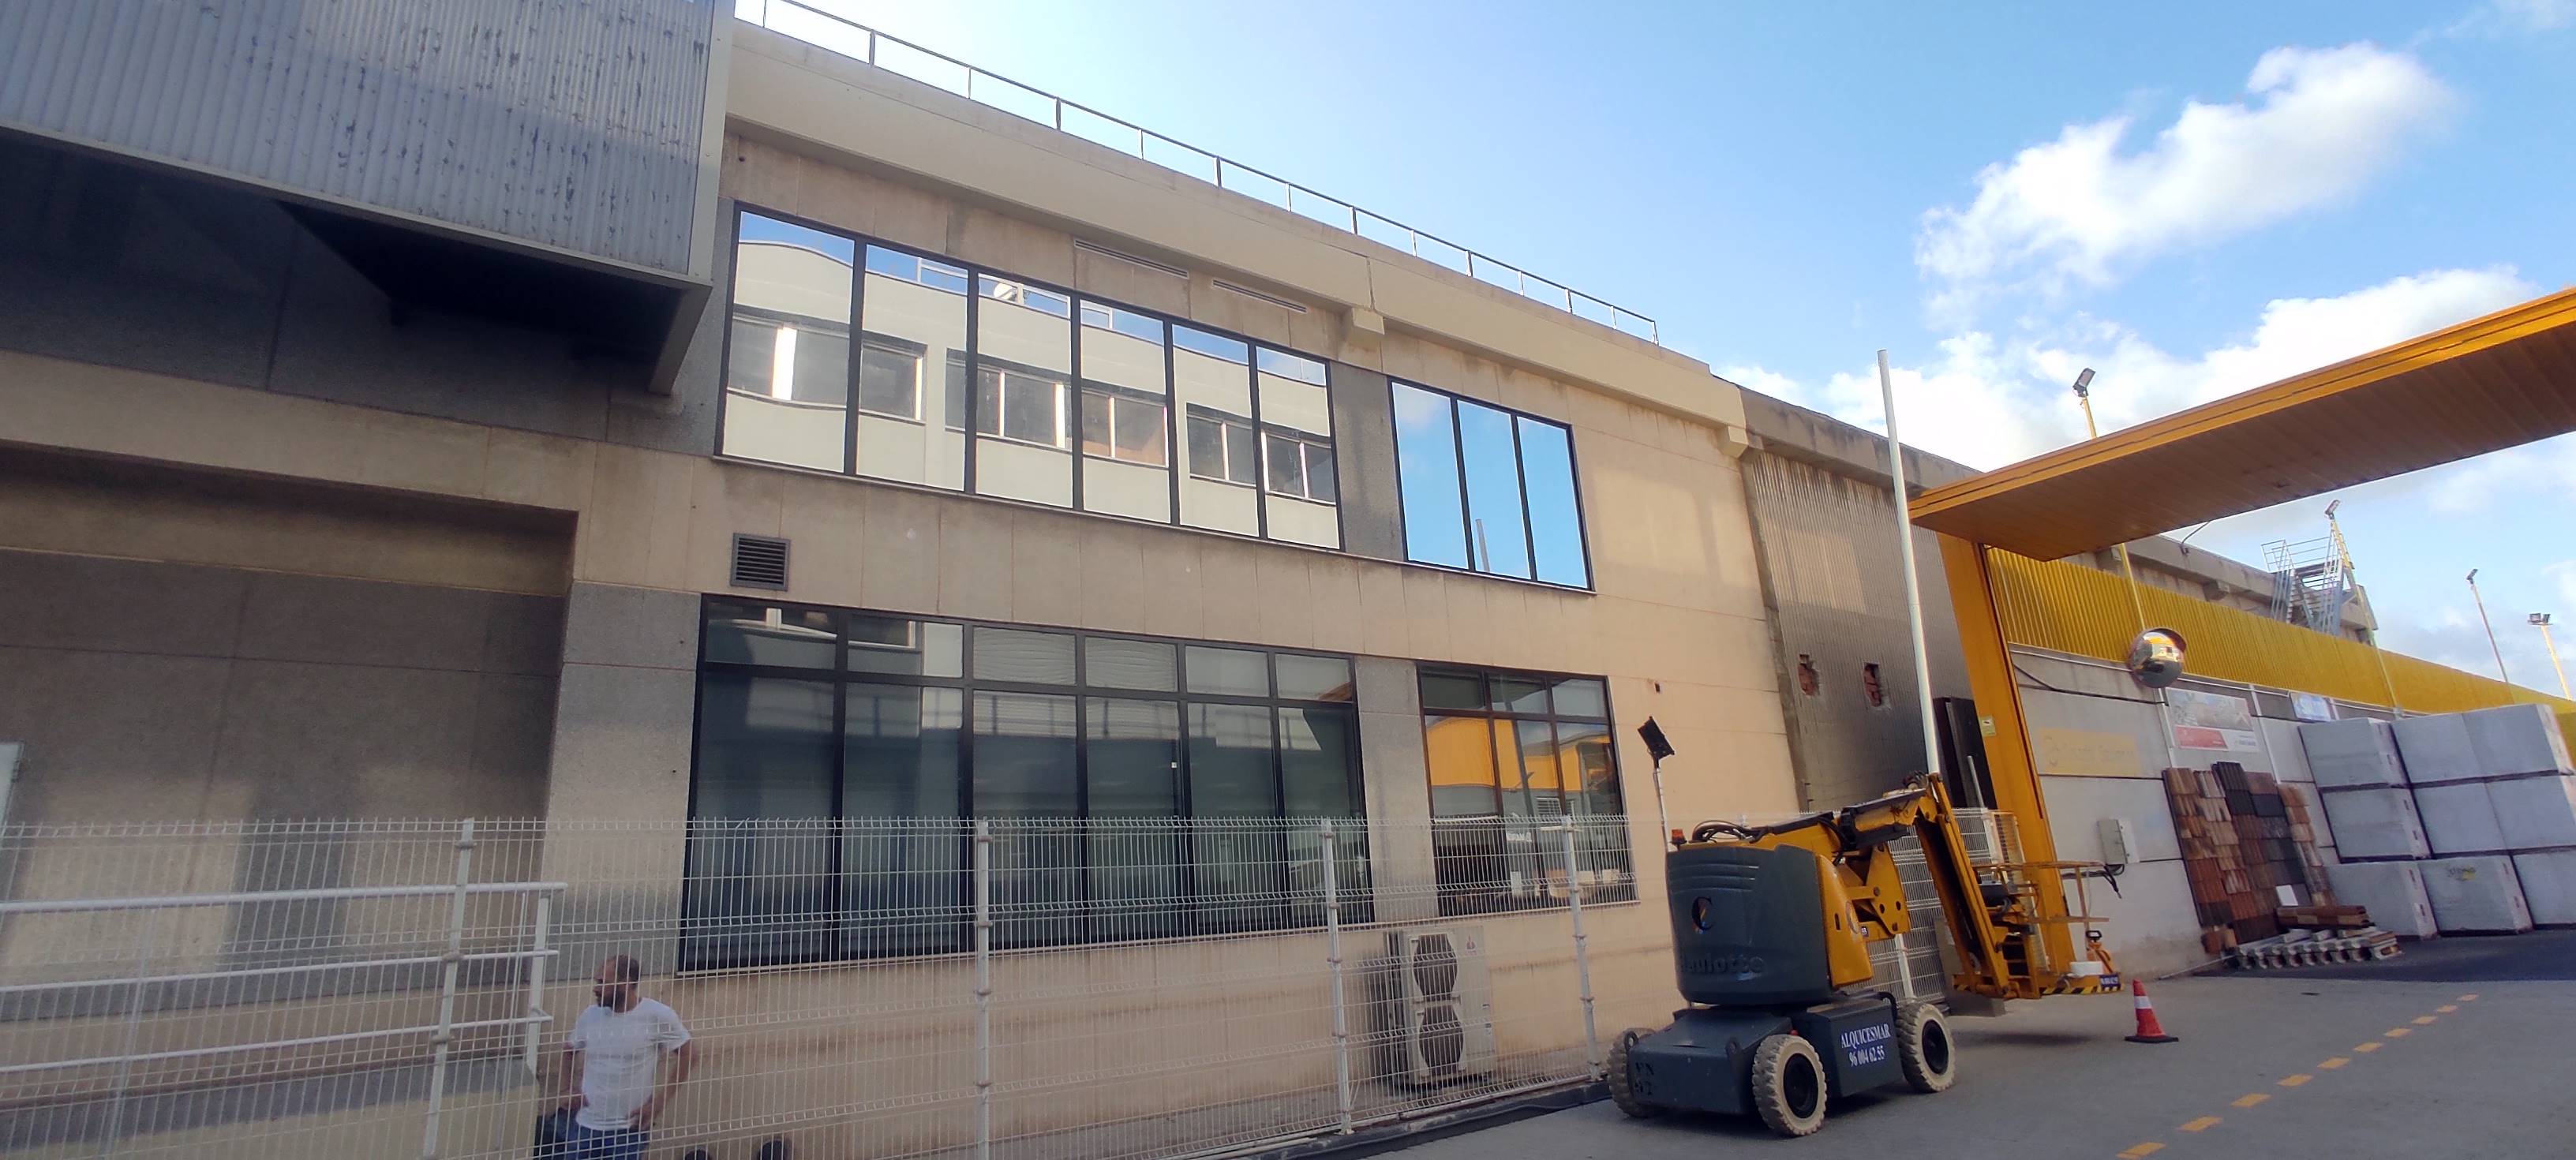 Controlando el Calor en la Oficina: Instalación de Láminas Solares en Quart de Poblet, Valencia